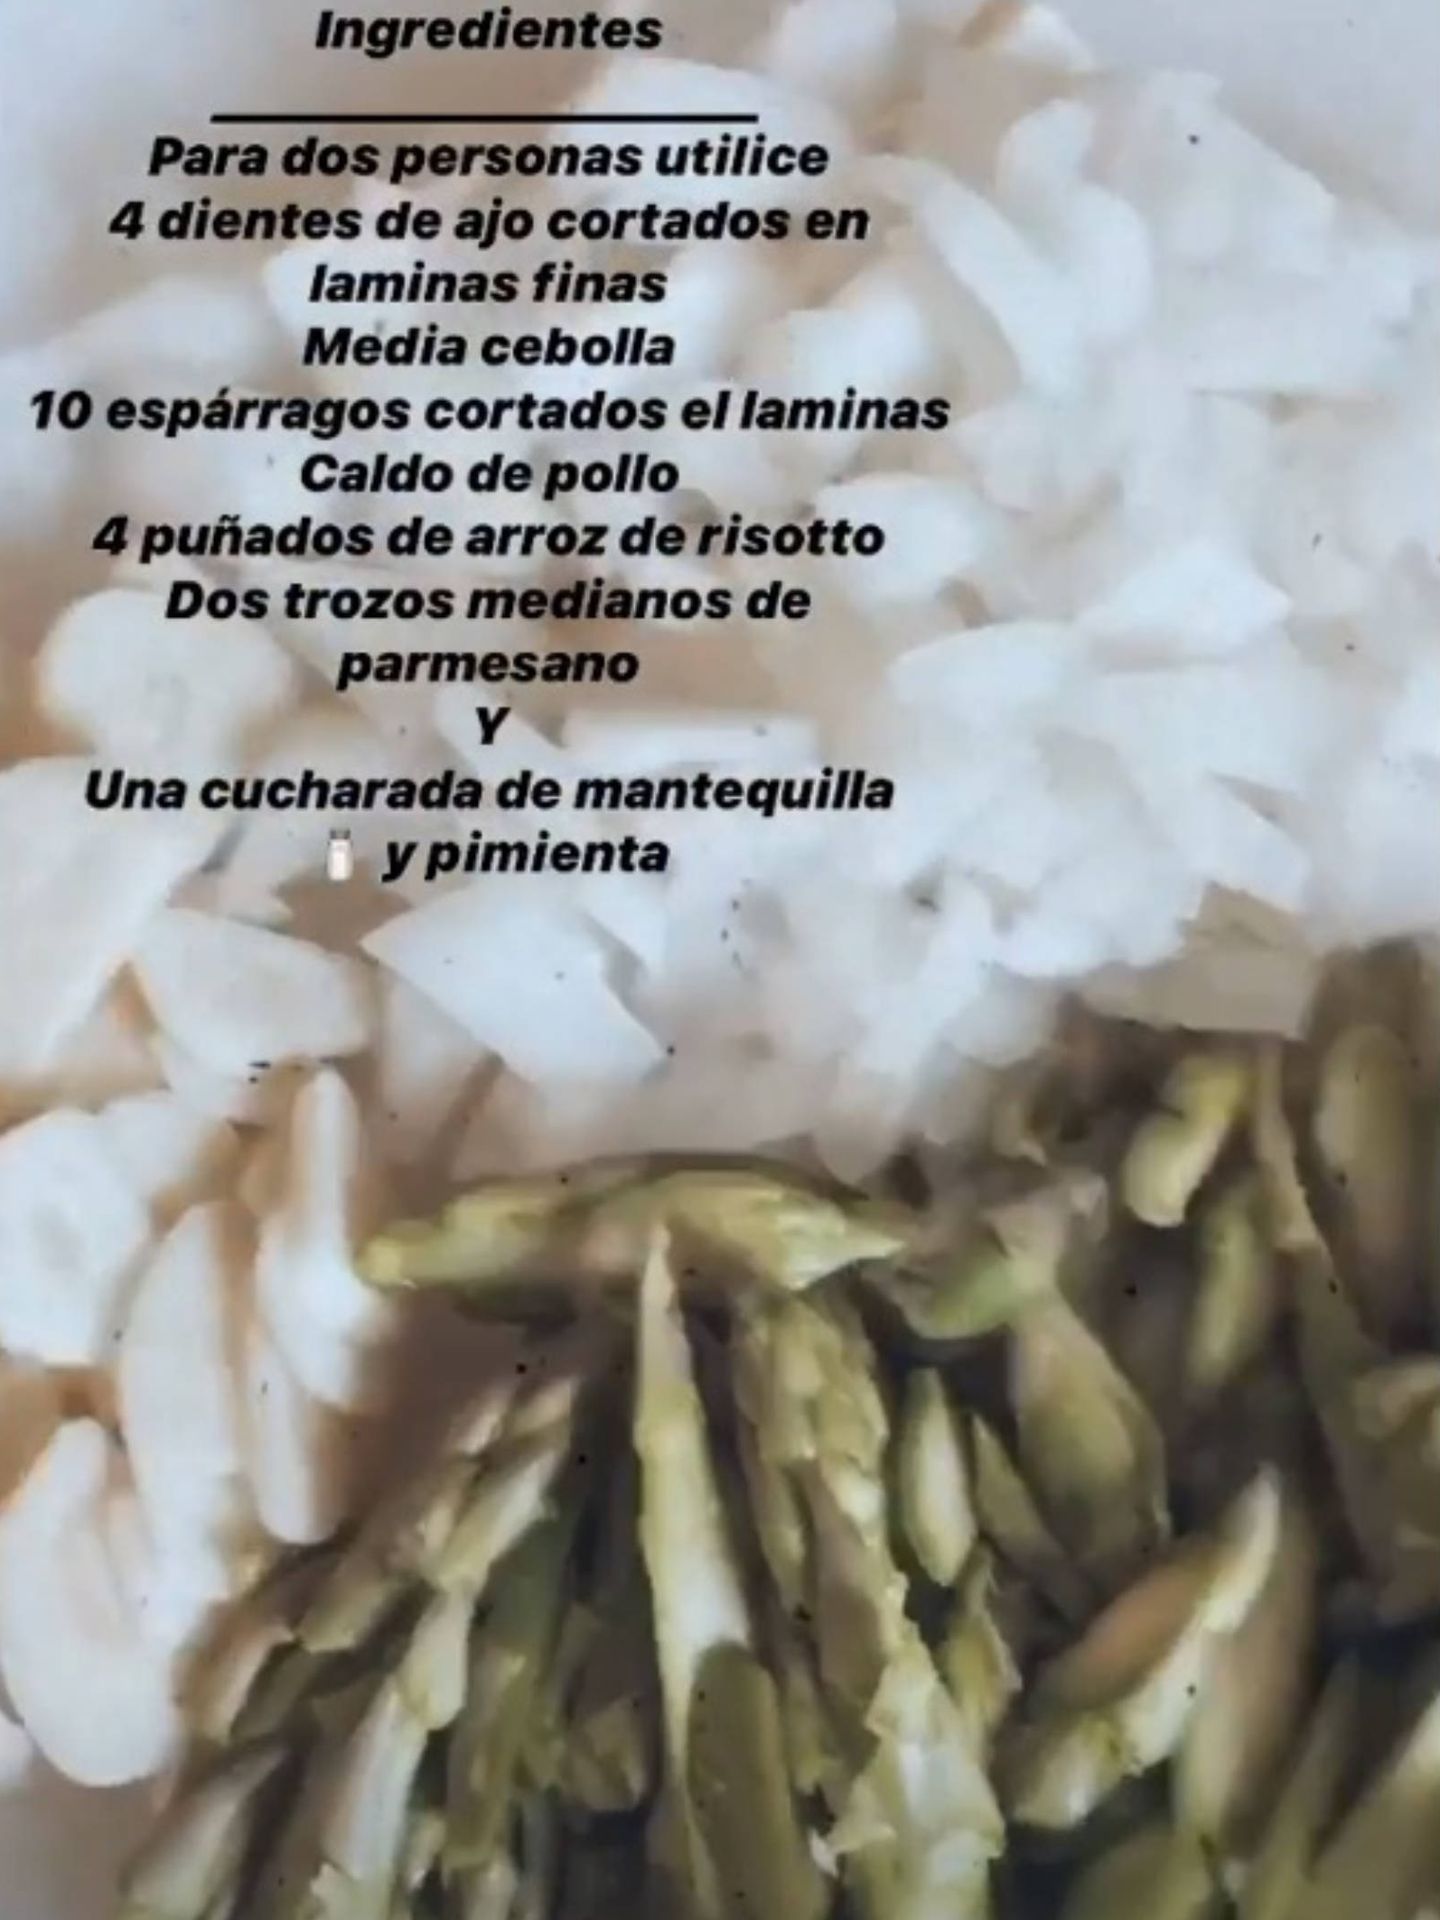 Recetas saludables que Vicky Martín Berrocal comparte en sus redes sociales. (Instagram @vickymartinberrocal)